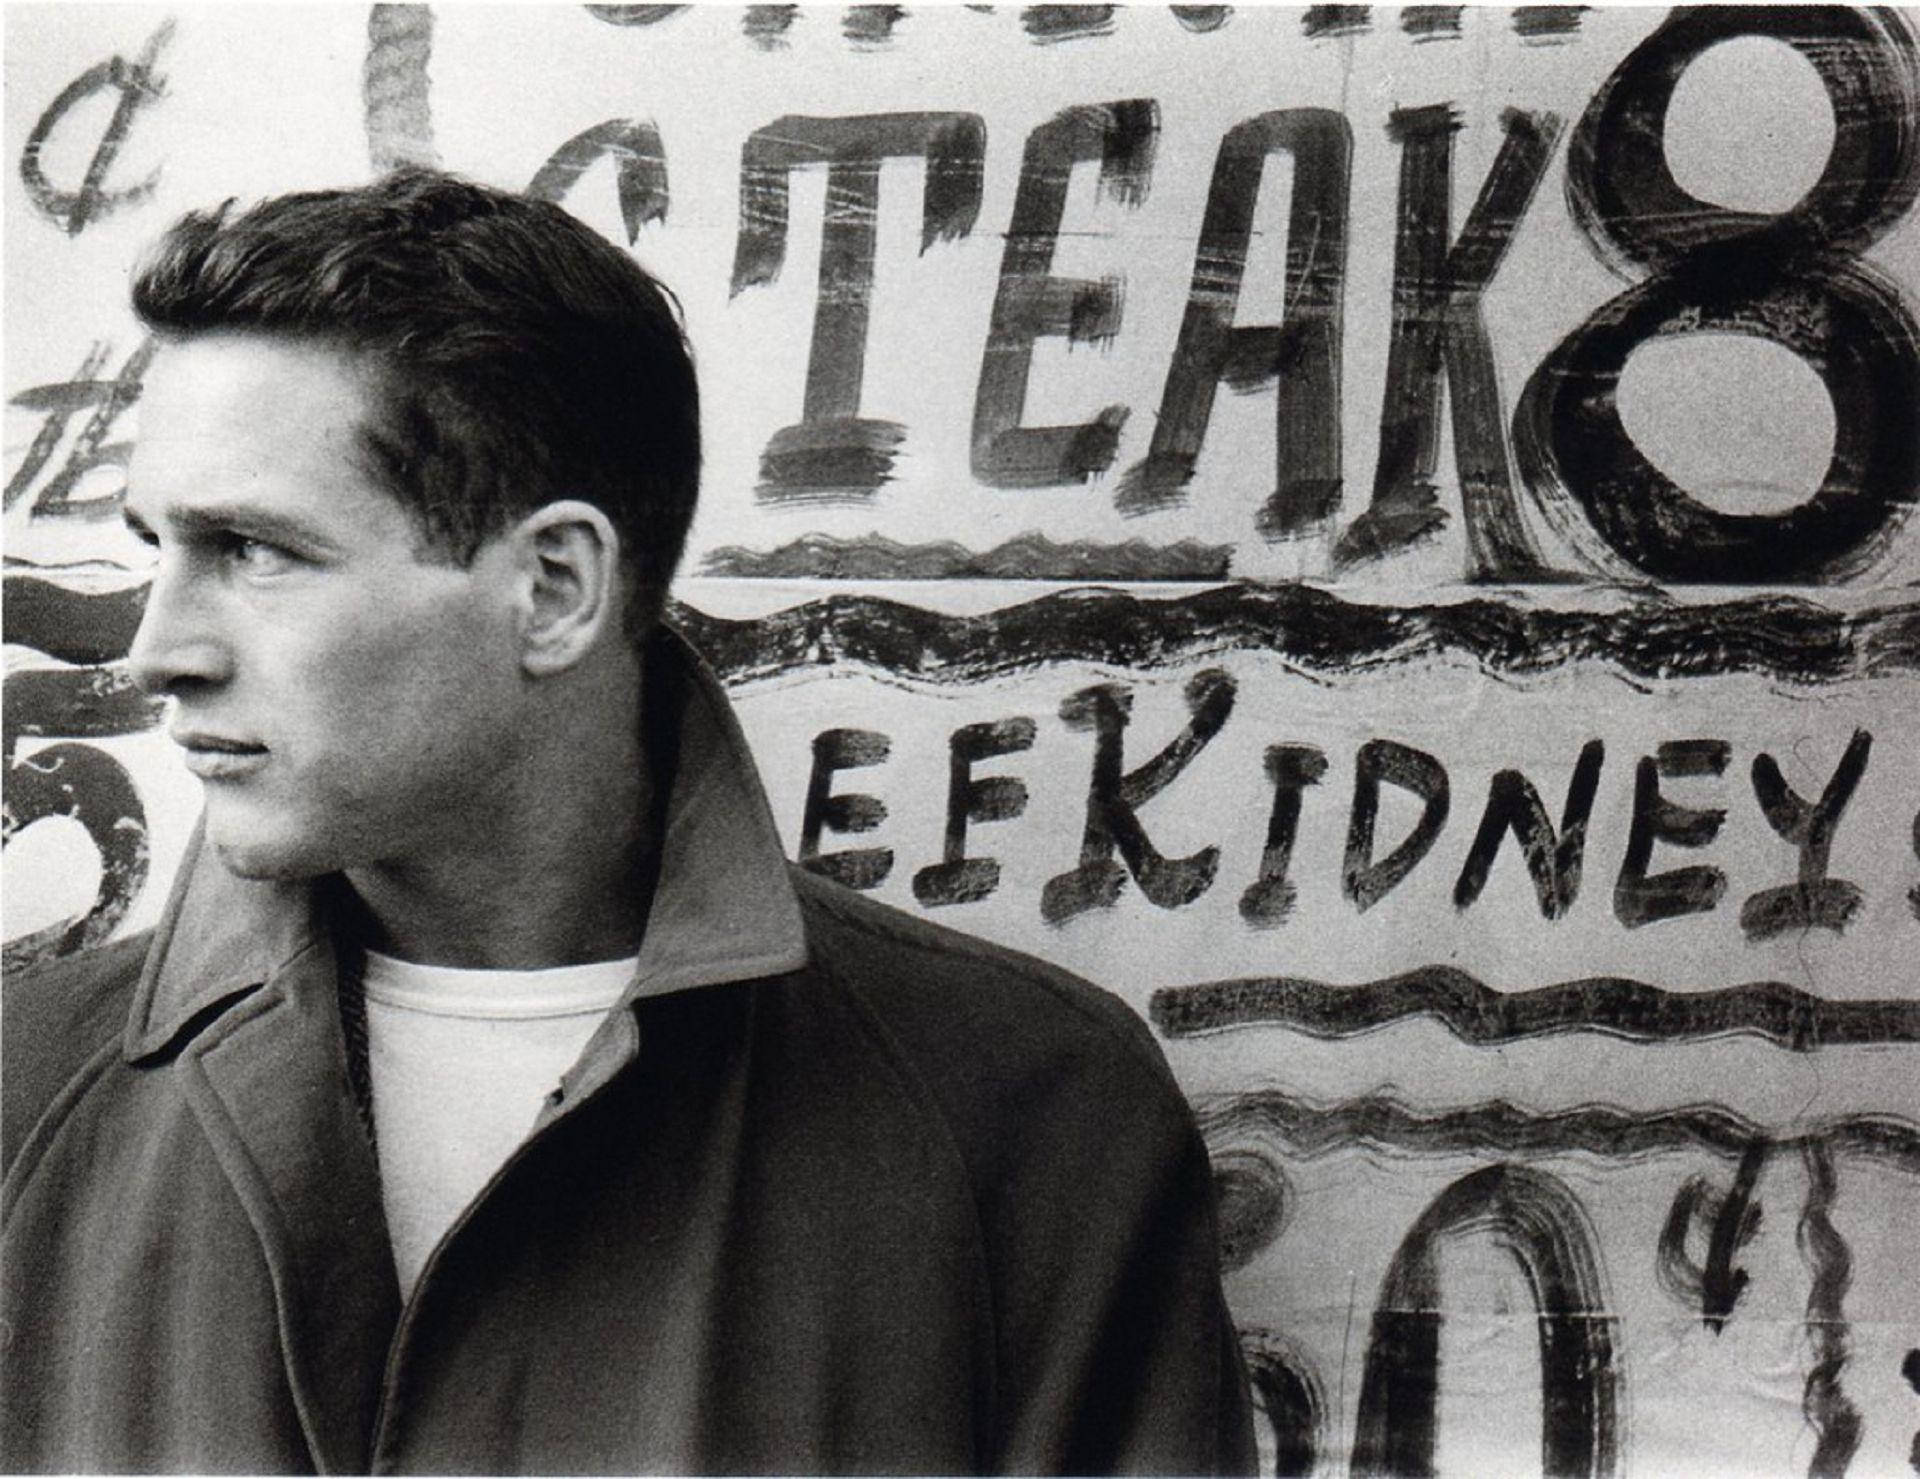 Paul Newman Against Graffiti Art Wallpaper